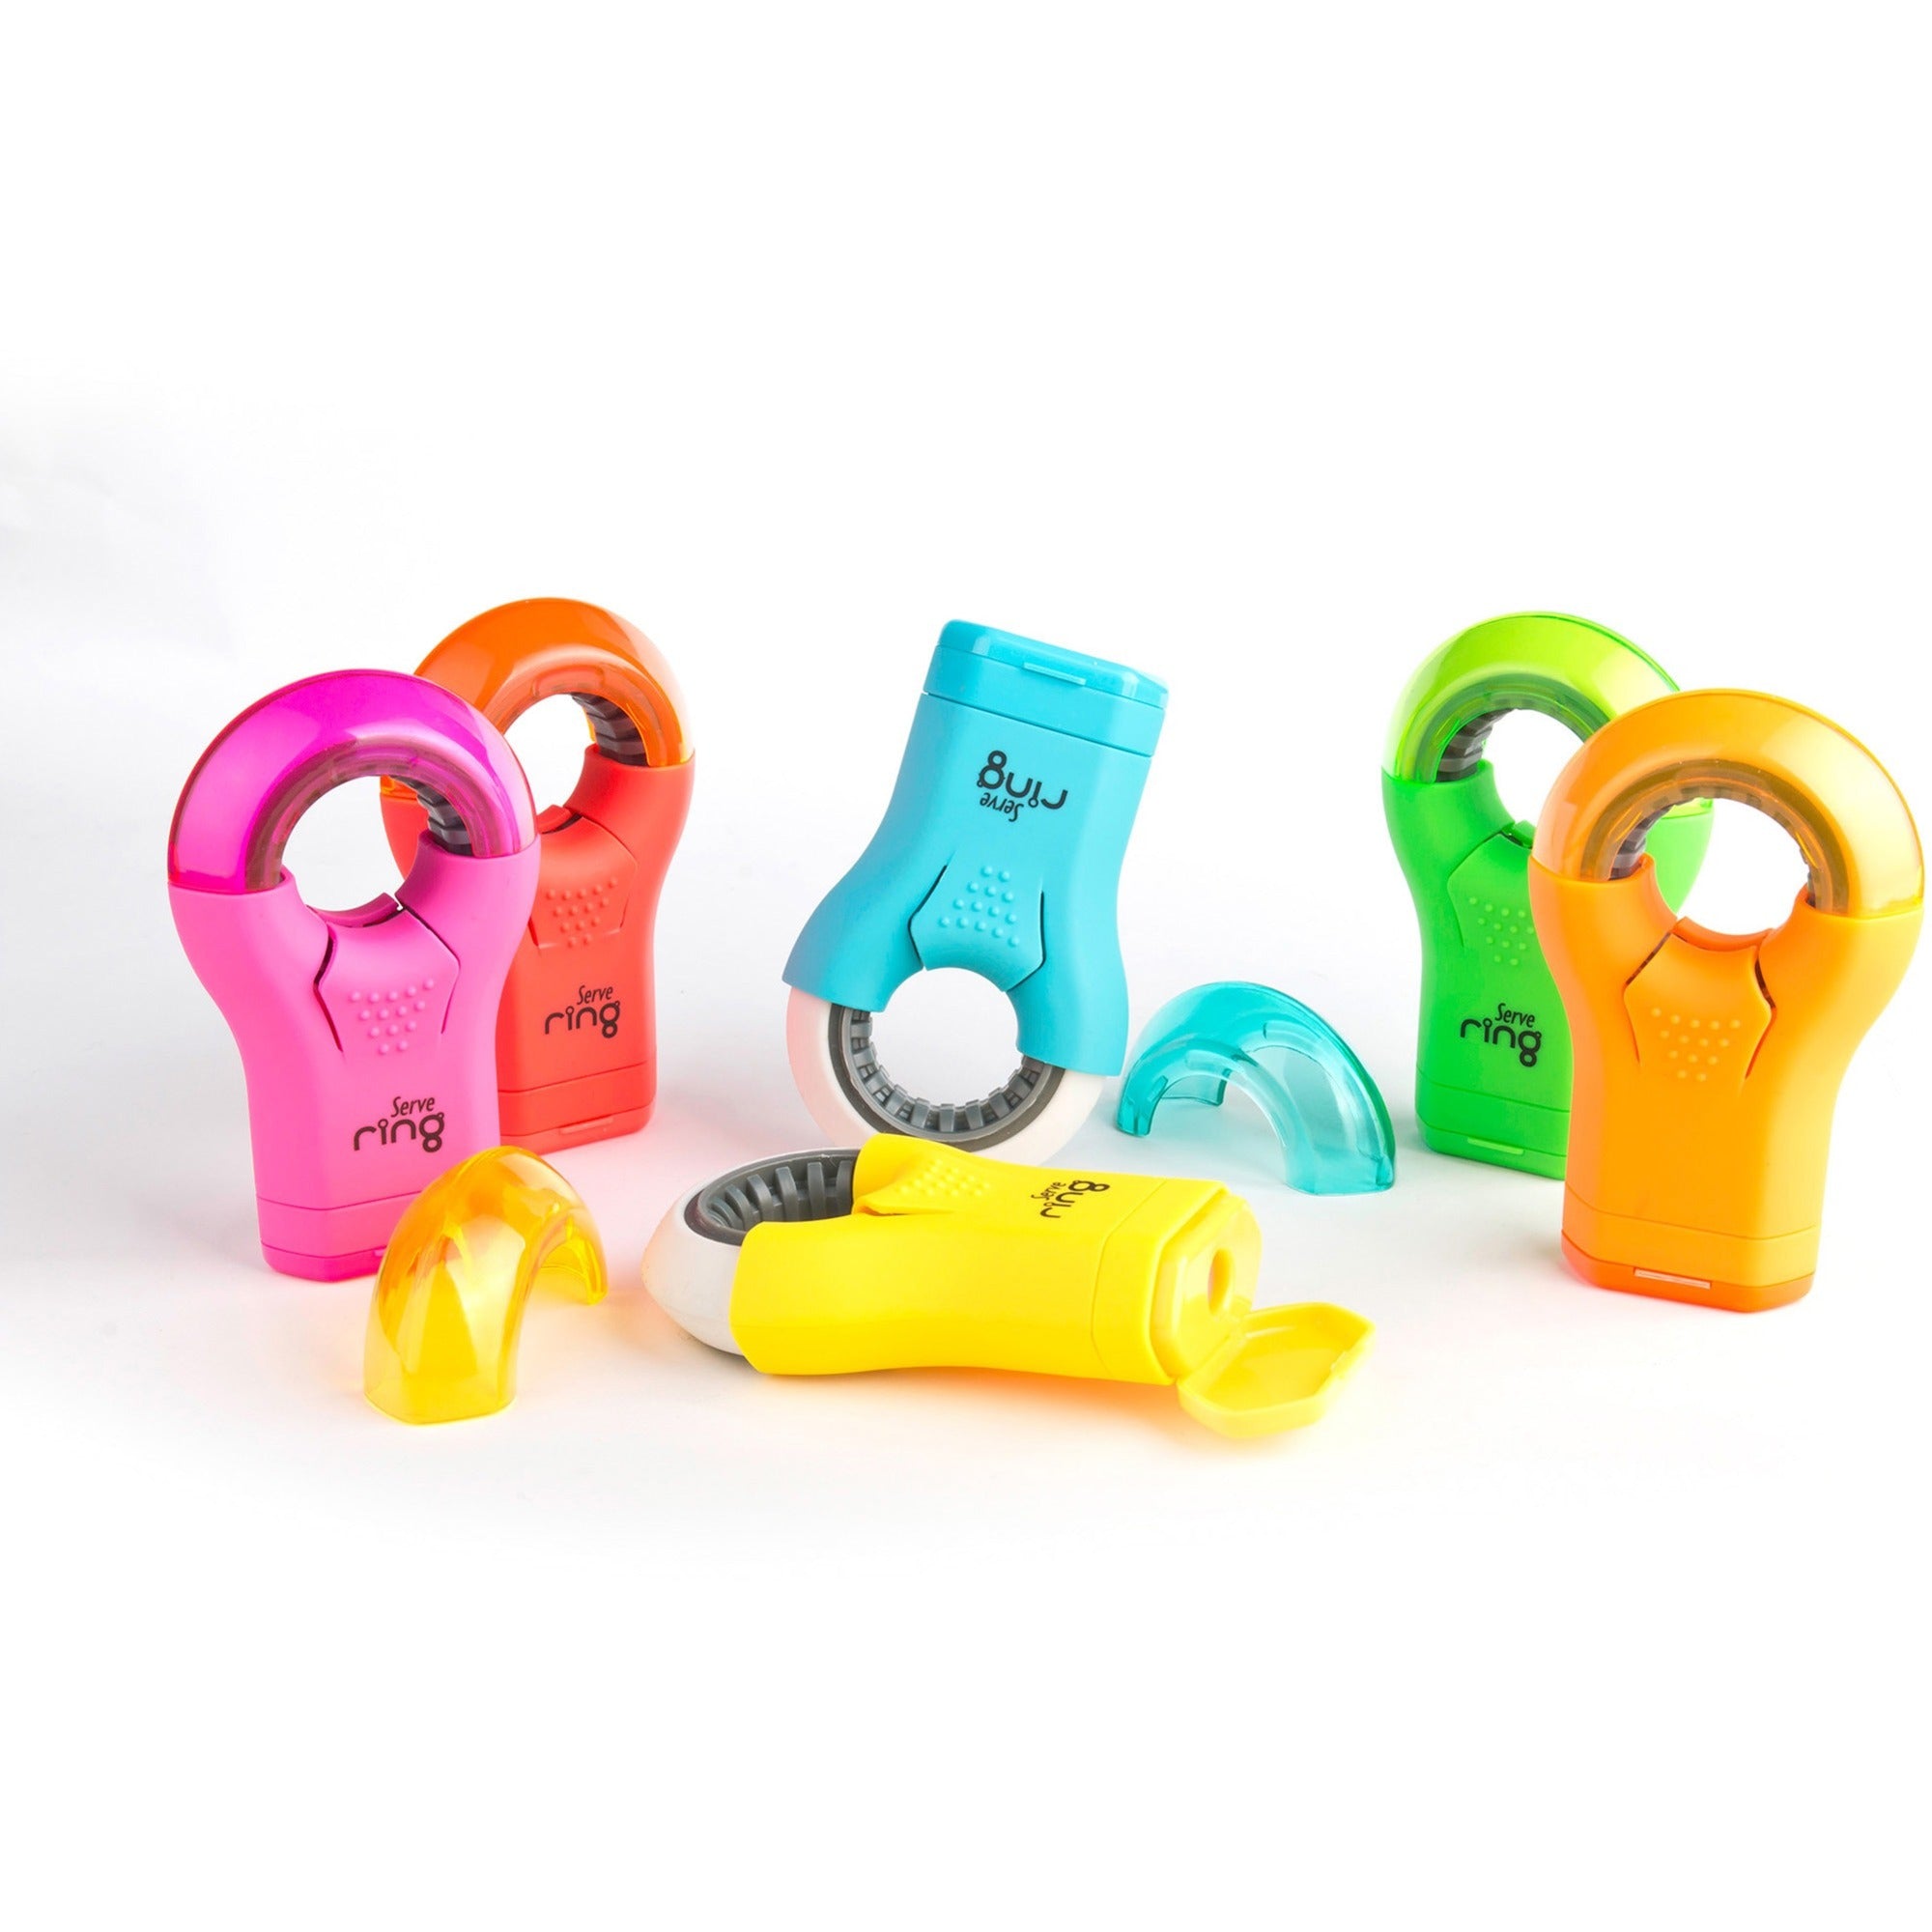 serve-ring-eraser-&-sharpener-plastic-multicolor-1-each_srvring8ktkr - 1